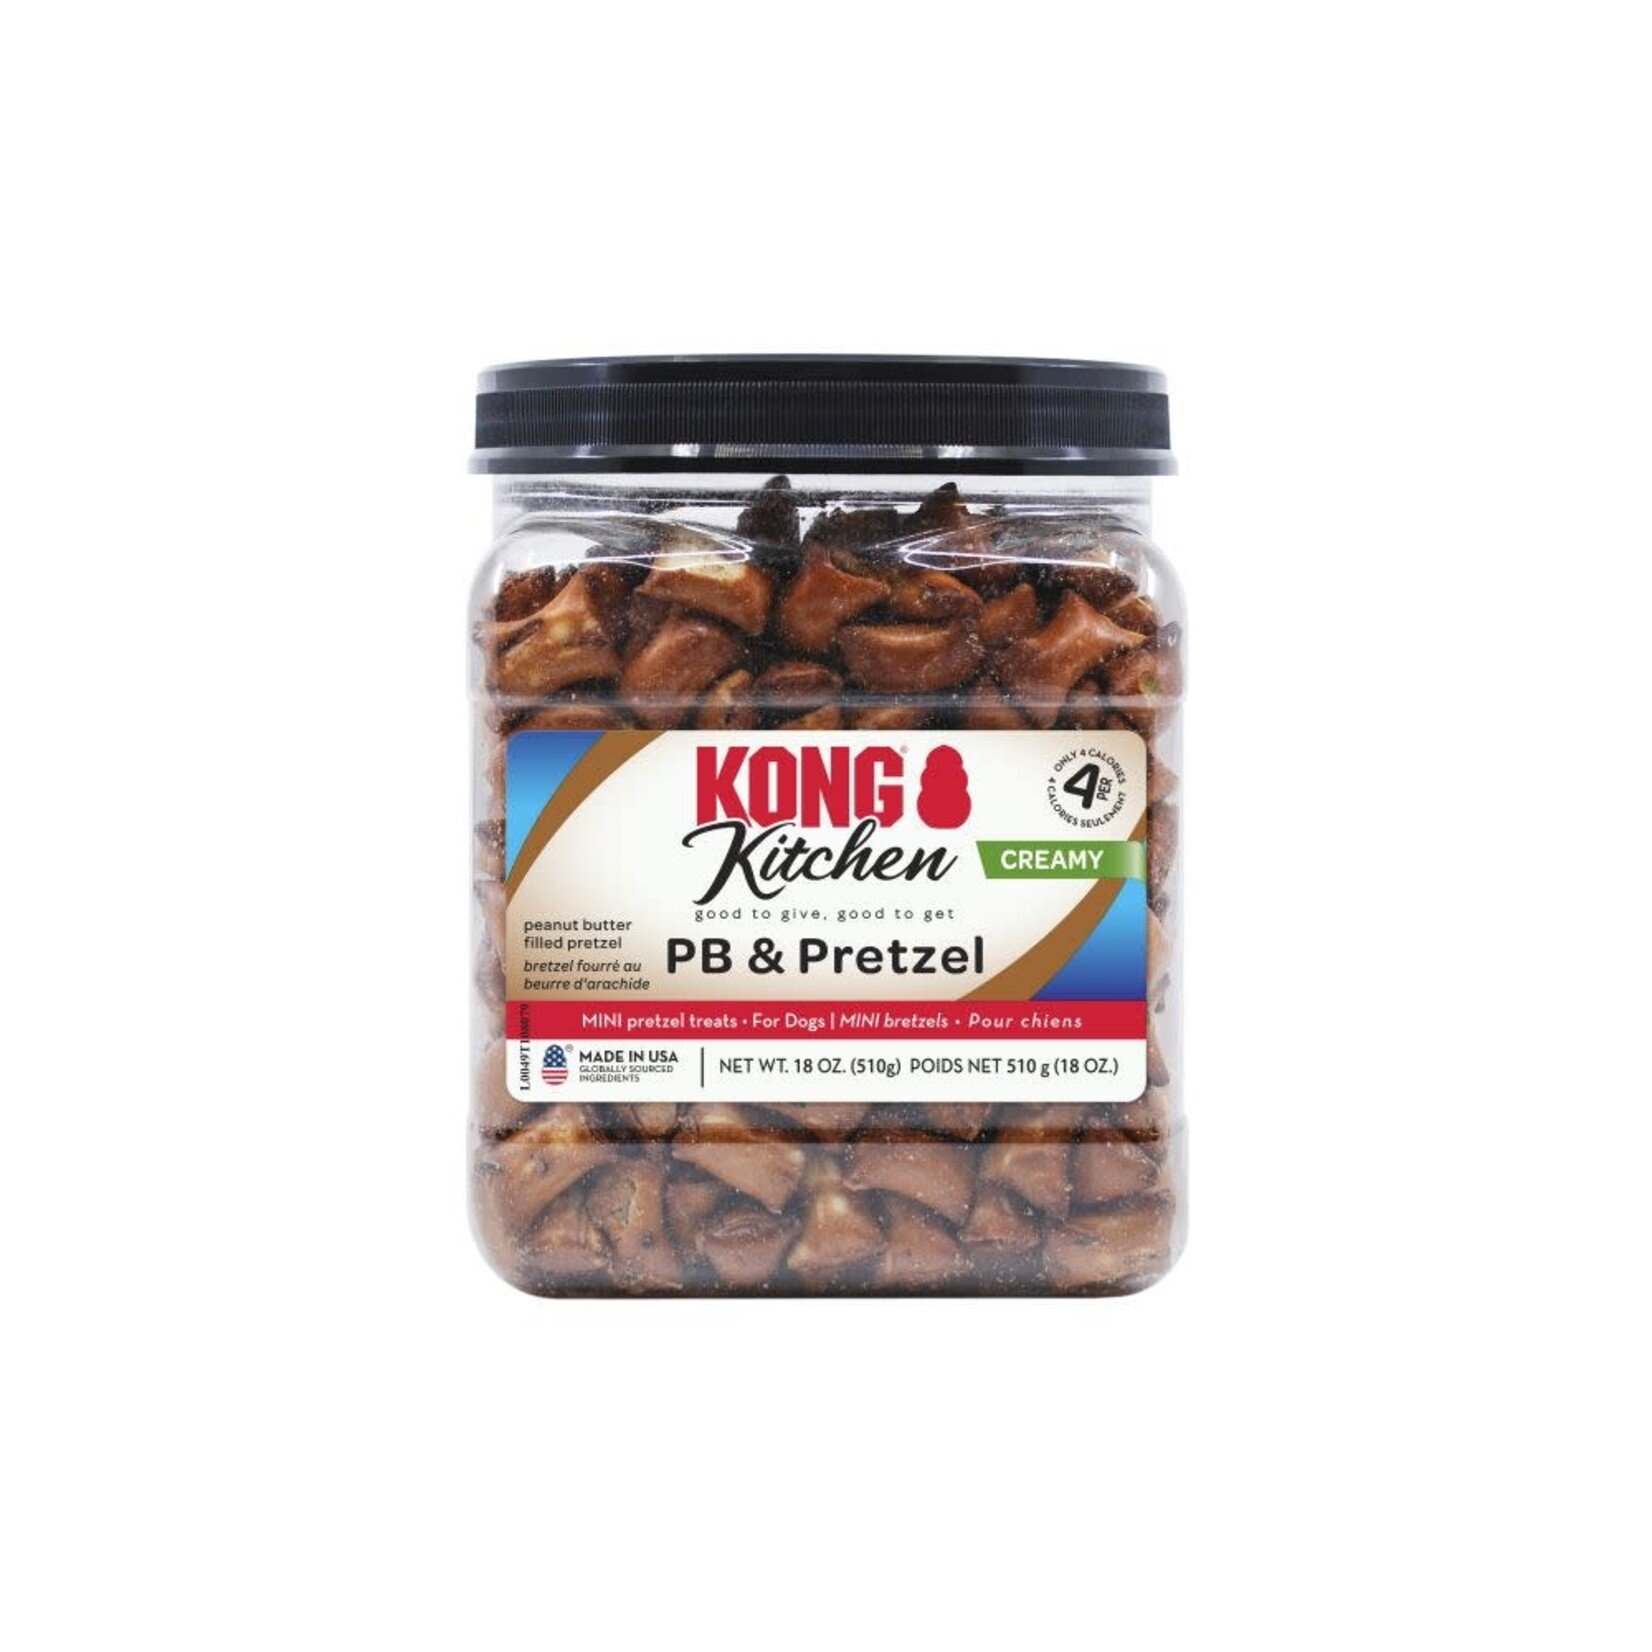 Kong Kong Kitchen Creamy  PB&Pretzel 510g